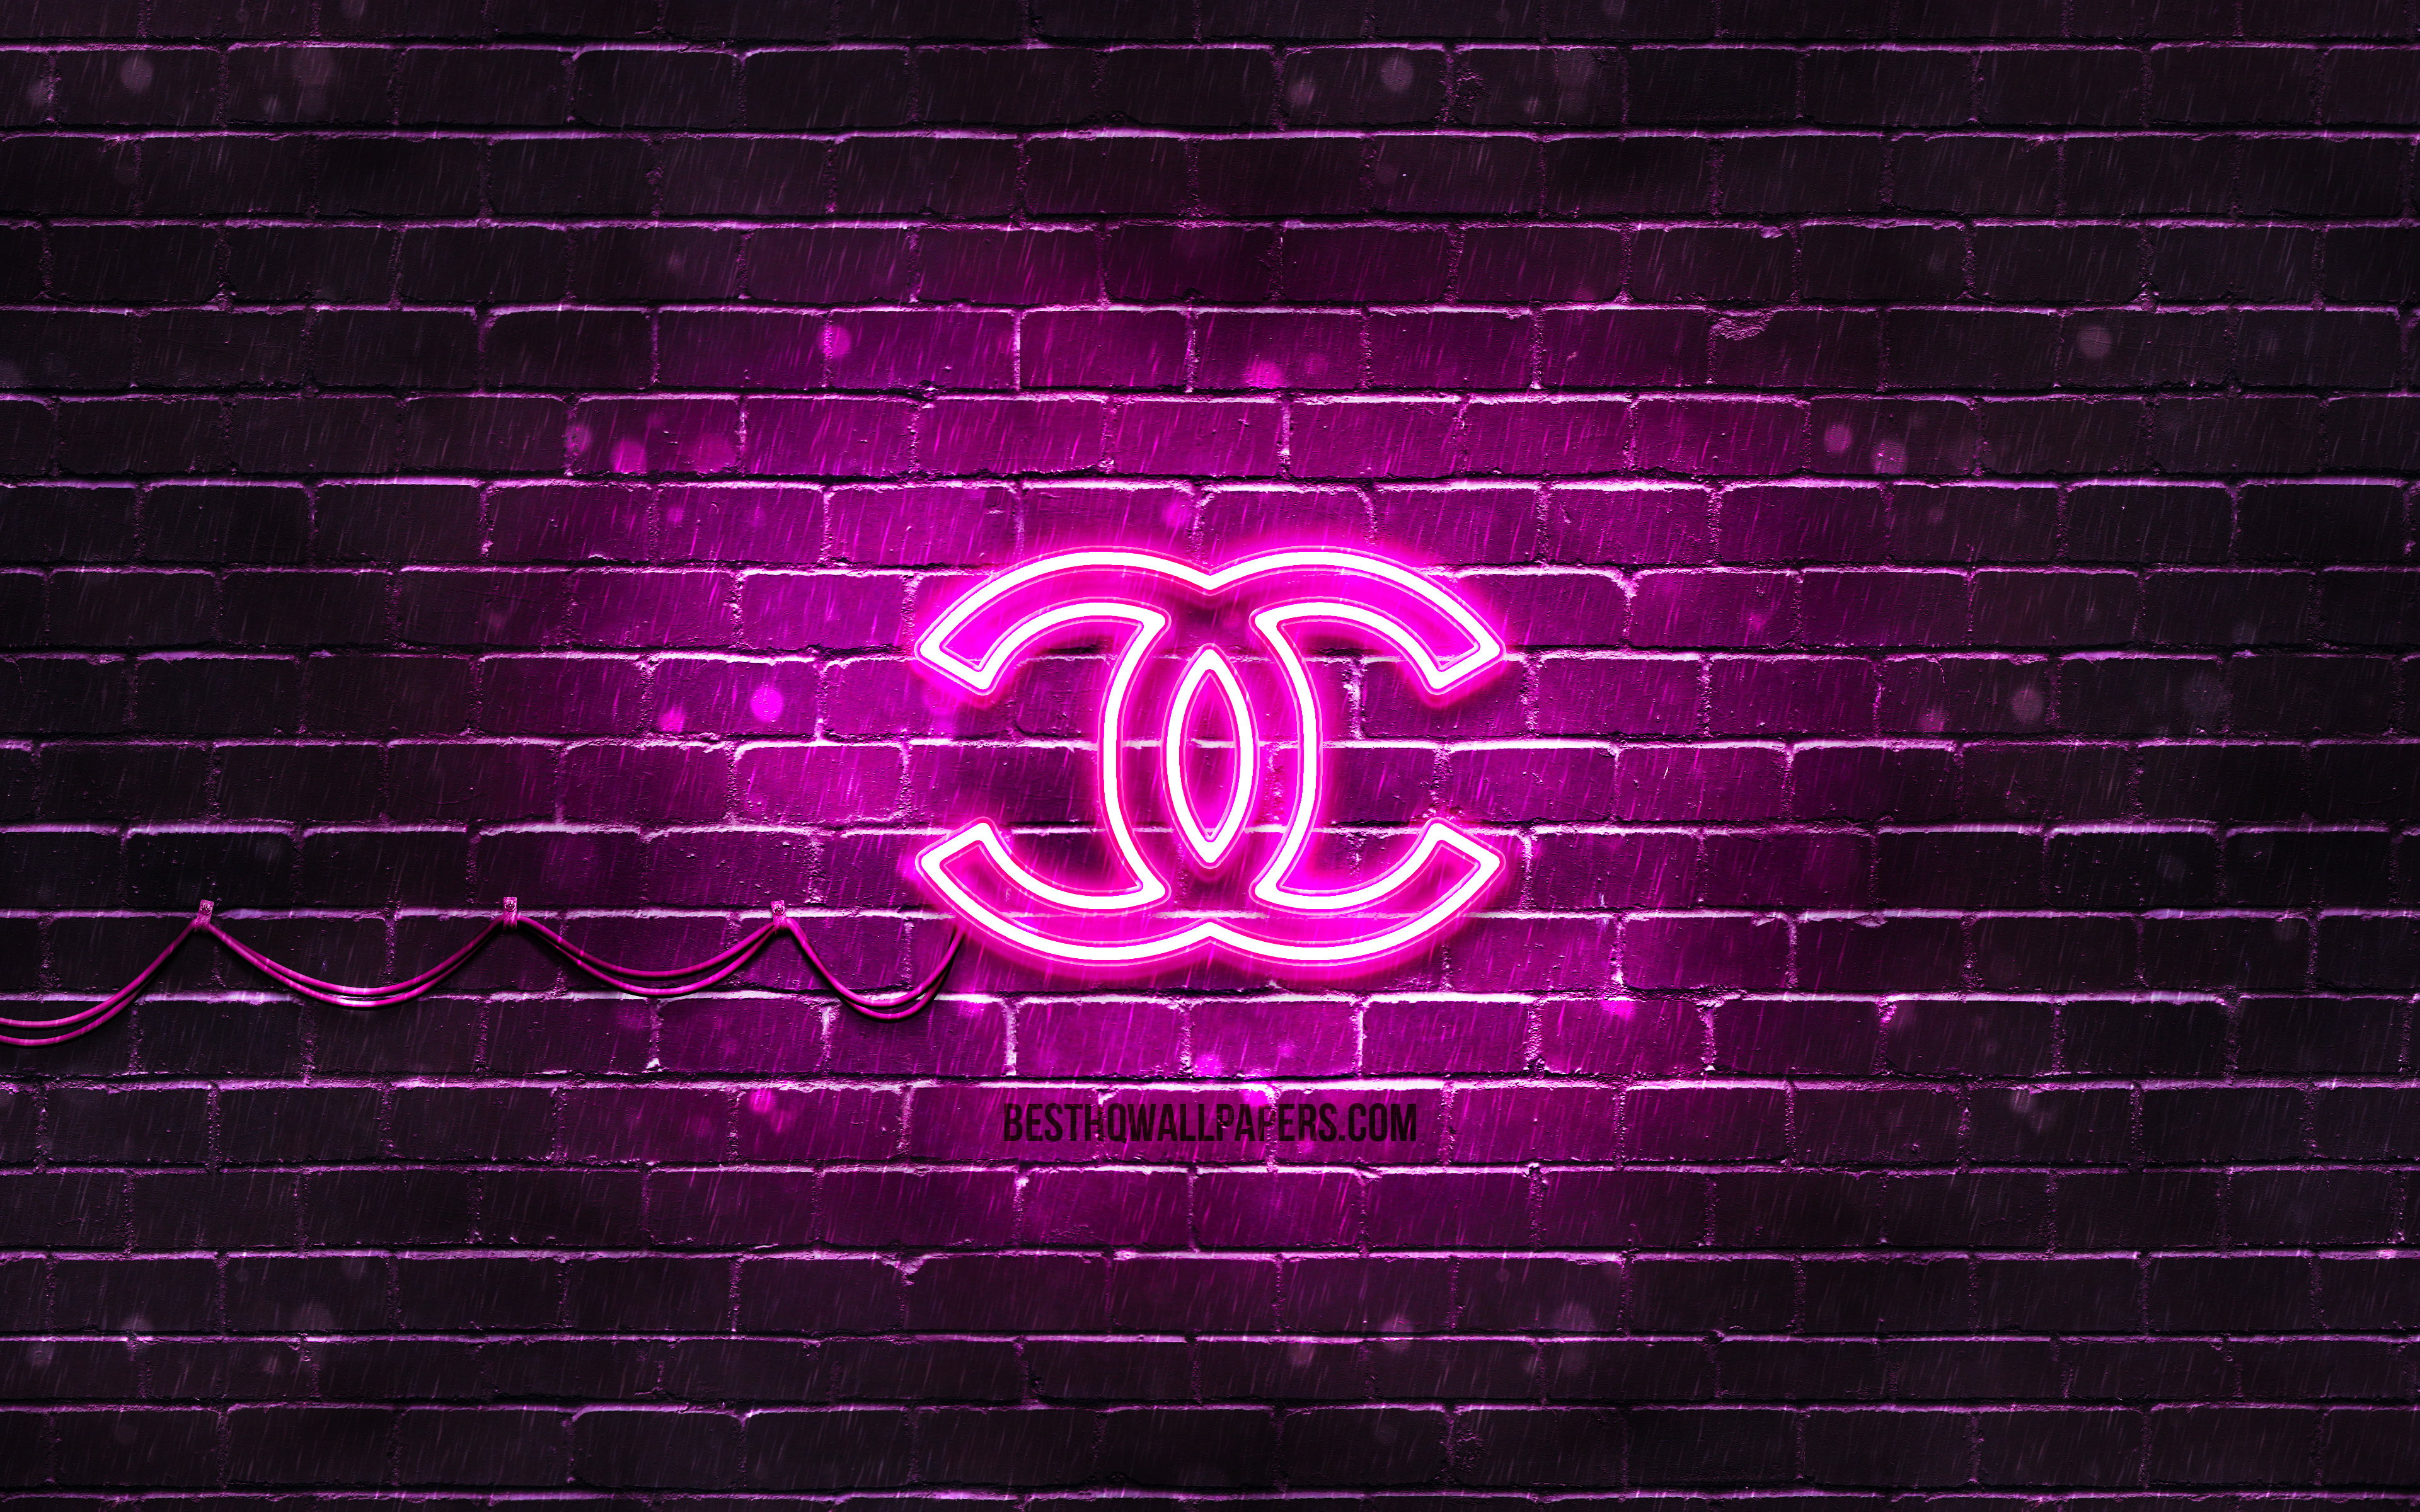 Download wallpapers Chanel purple logo, 4k, purple brickwall, Chanel ...